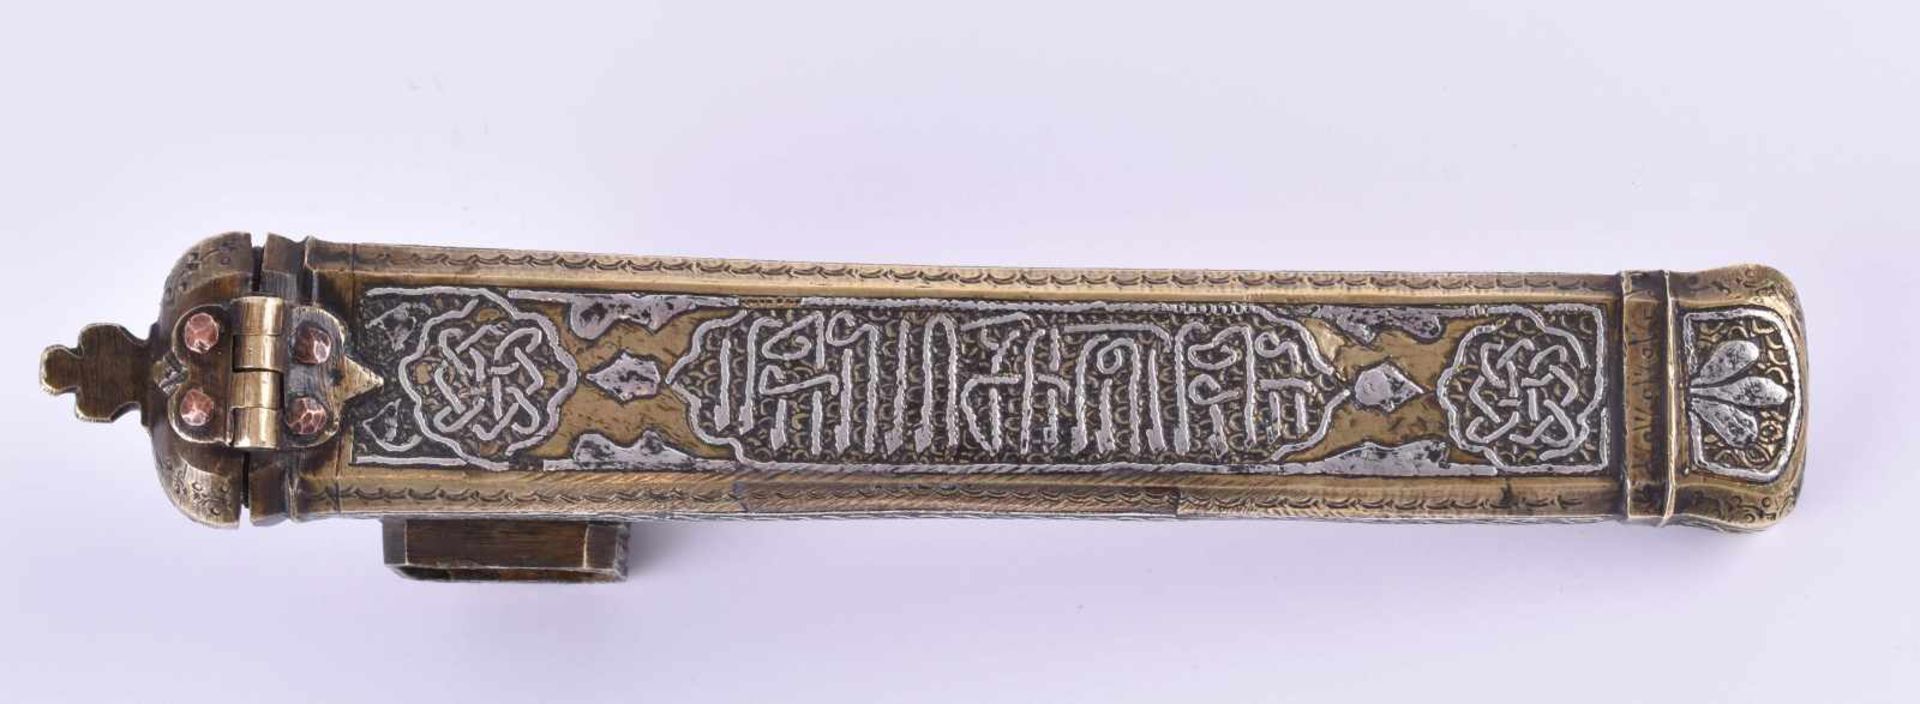 Reise-Schreibzeug, Islamik Penbox um 1900Bronze mit Silberinlet, L: 22 cmTravel writing utensils, - Image 3 of 5